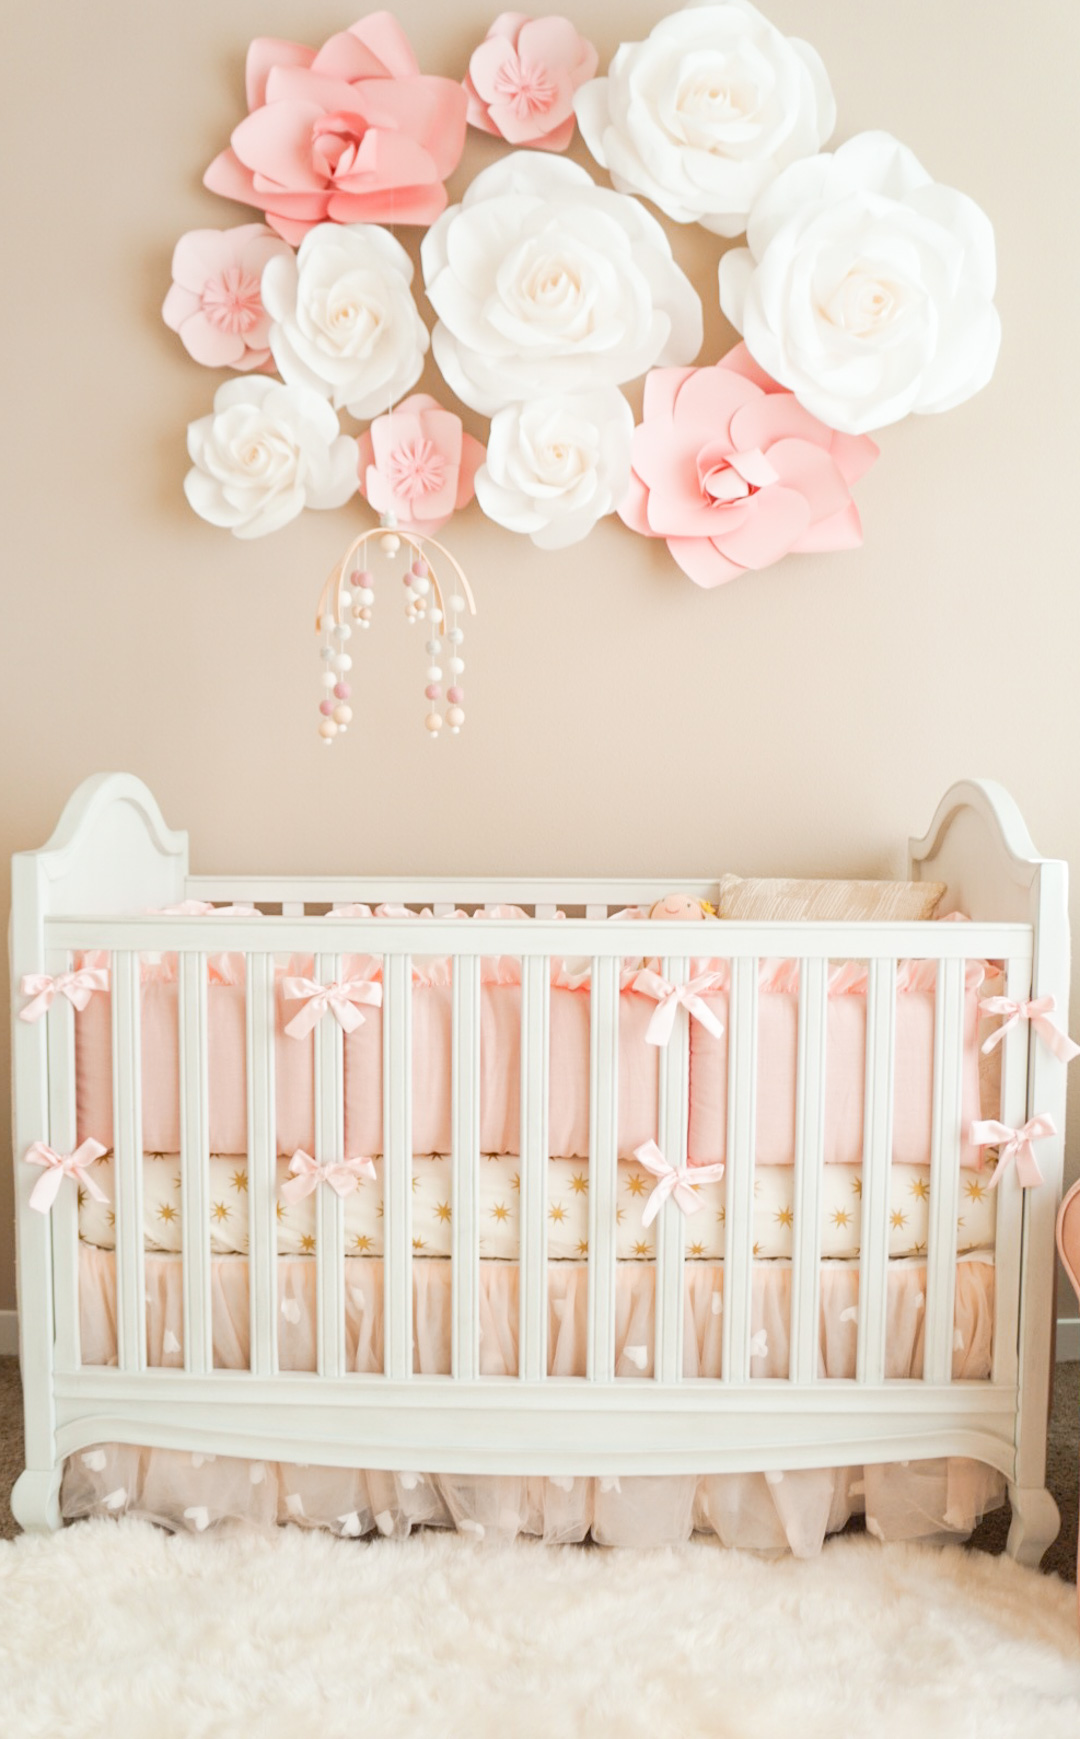 pink nursery ideas